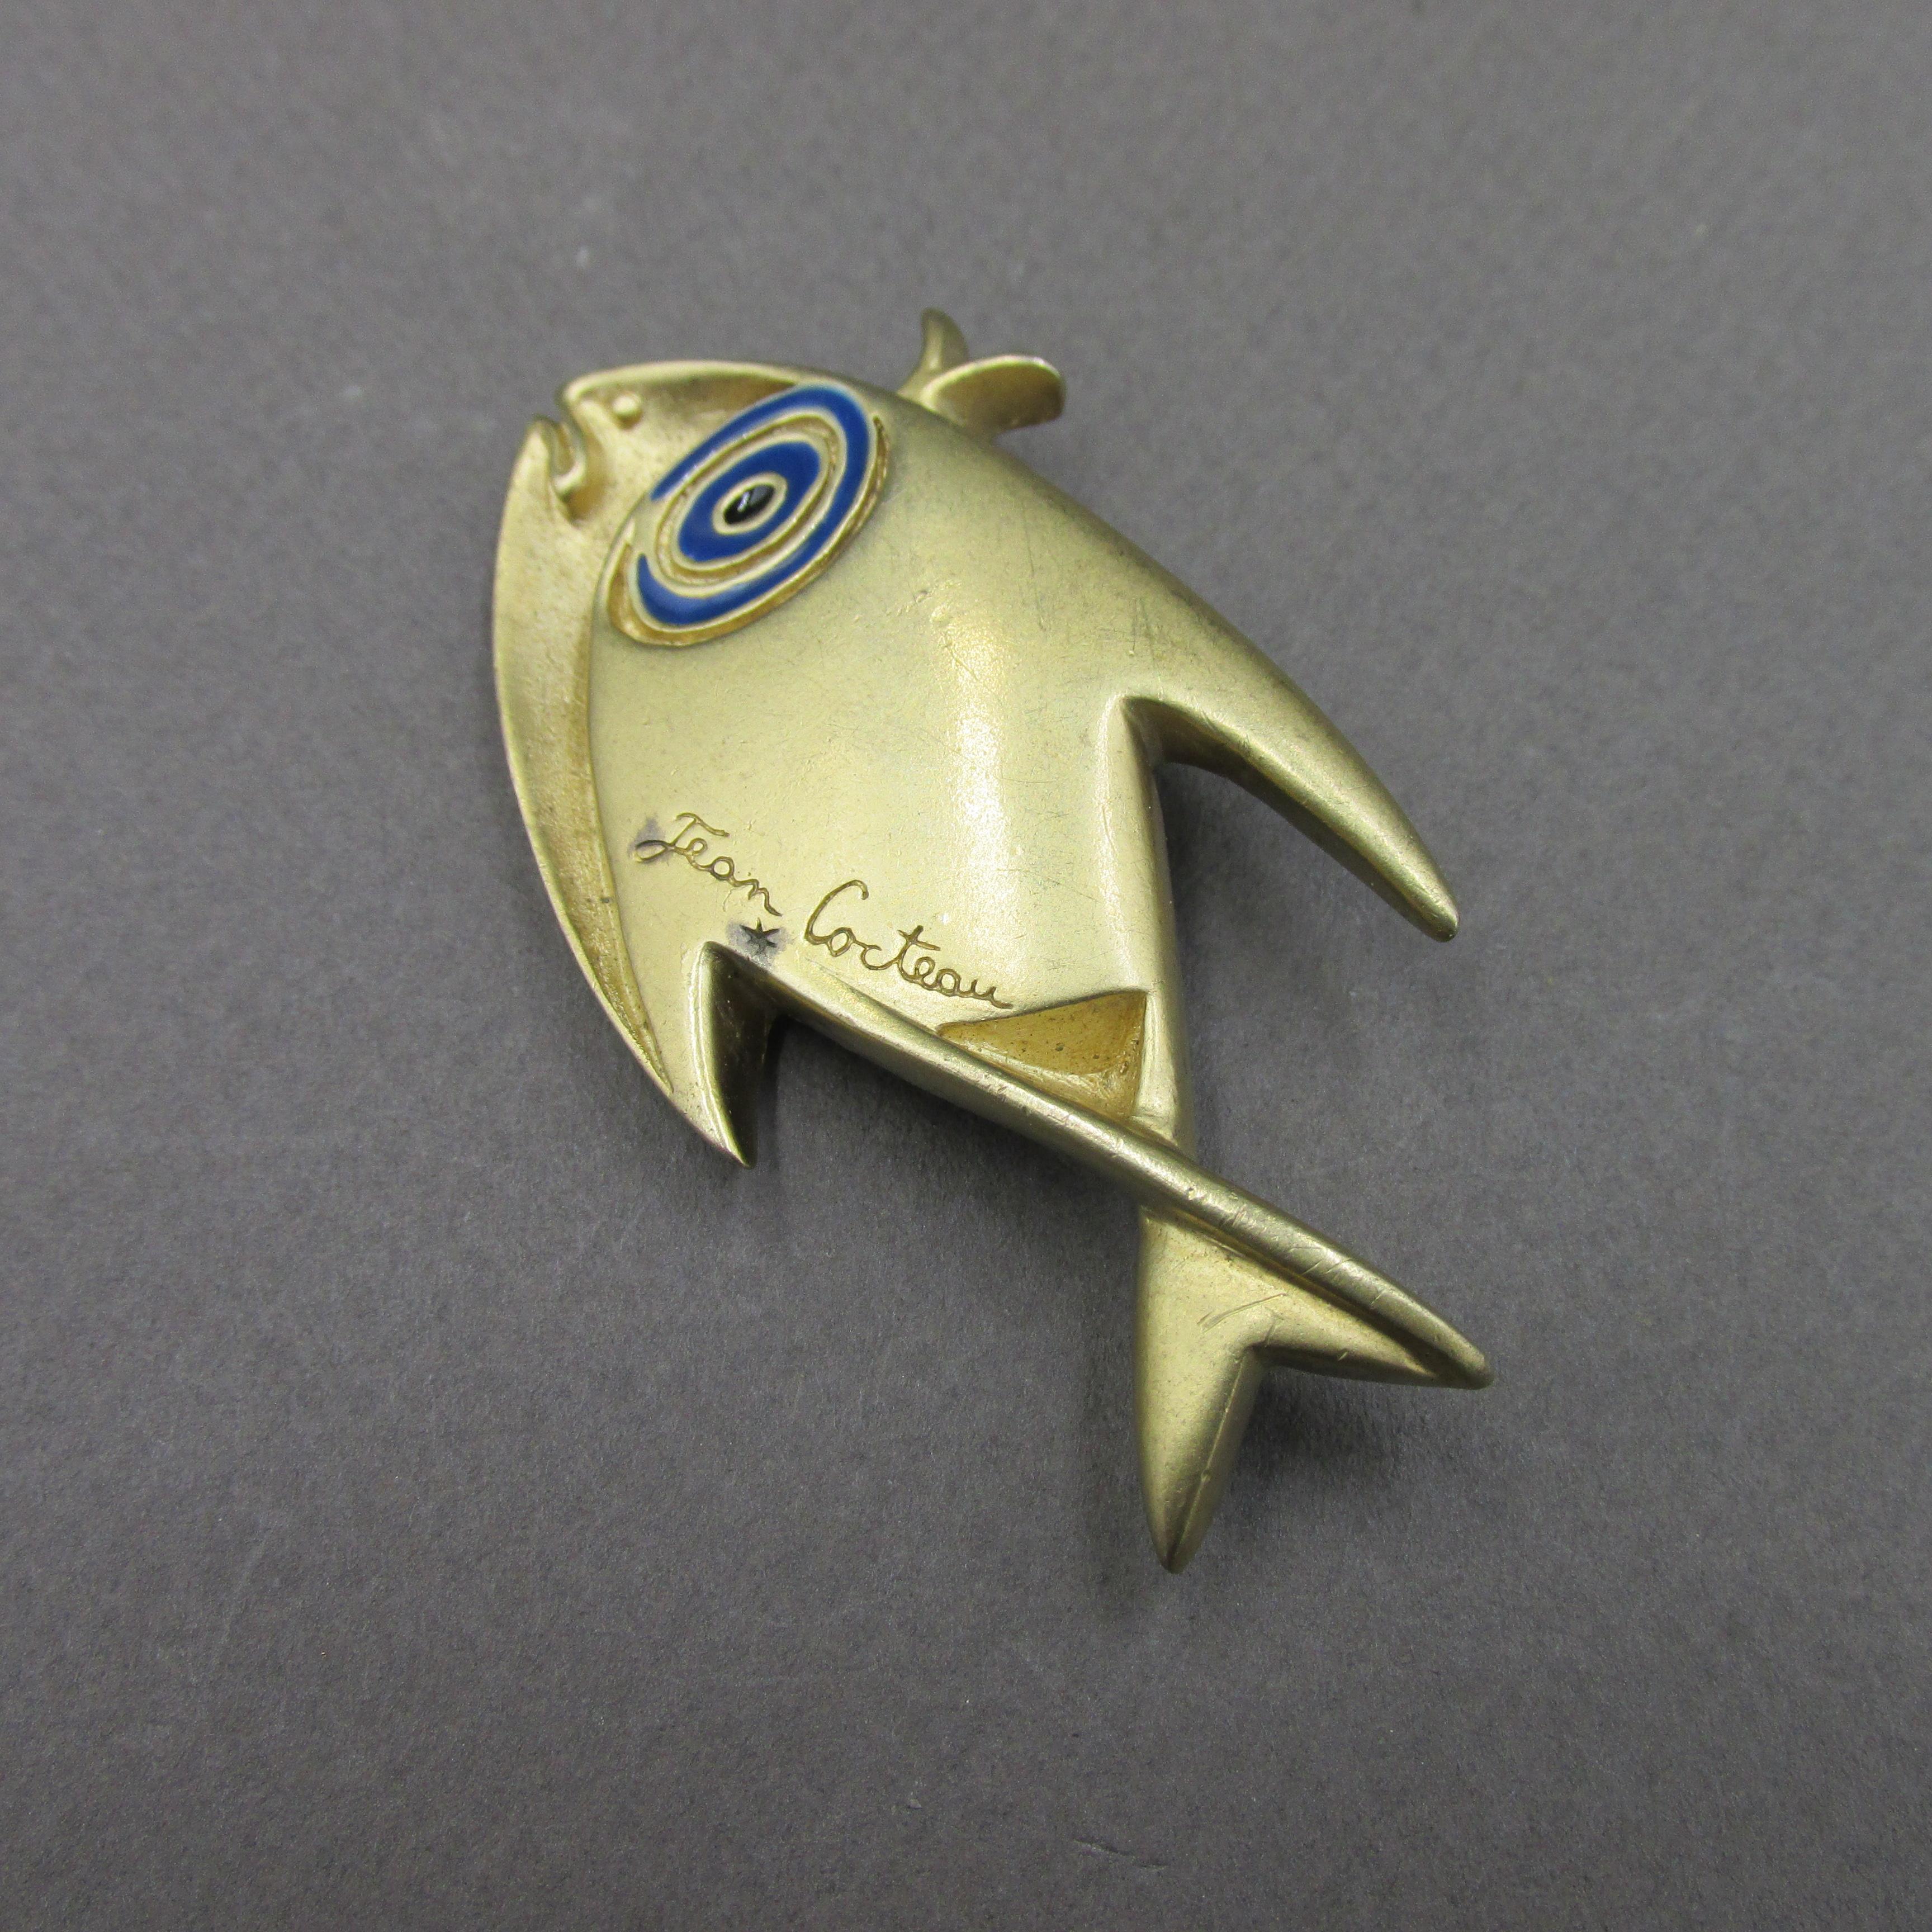 Broche poisson de Jean Cocteau produite par le Comité Jean Cocteau en 1997 .
Elle est réalisée en métal doré et émail bleu .
Très bon état .

Dimensions : 

Hauteur : 6 cm
Largeur : 3 cm 

Poids : 25,40 gr 

Envoi soigné avec numéro de suivi et